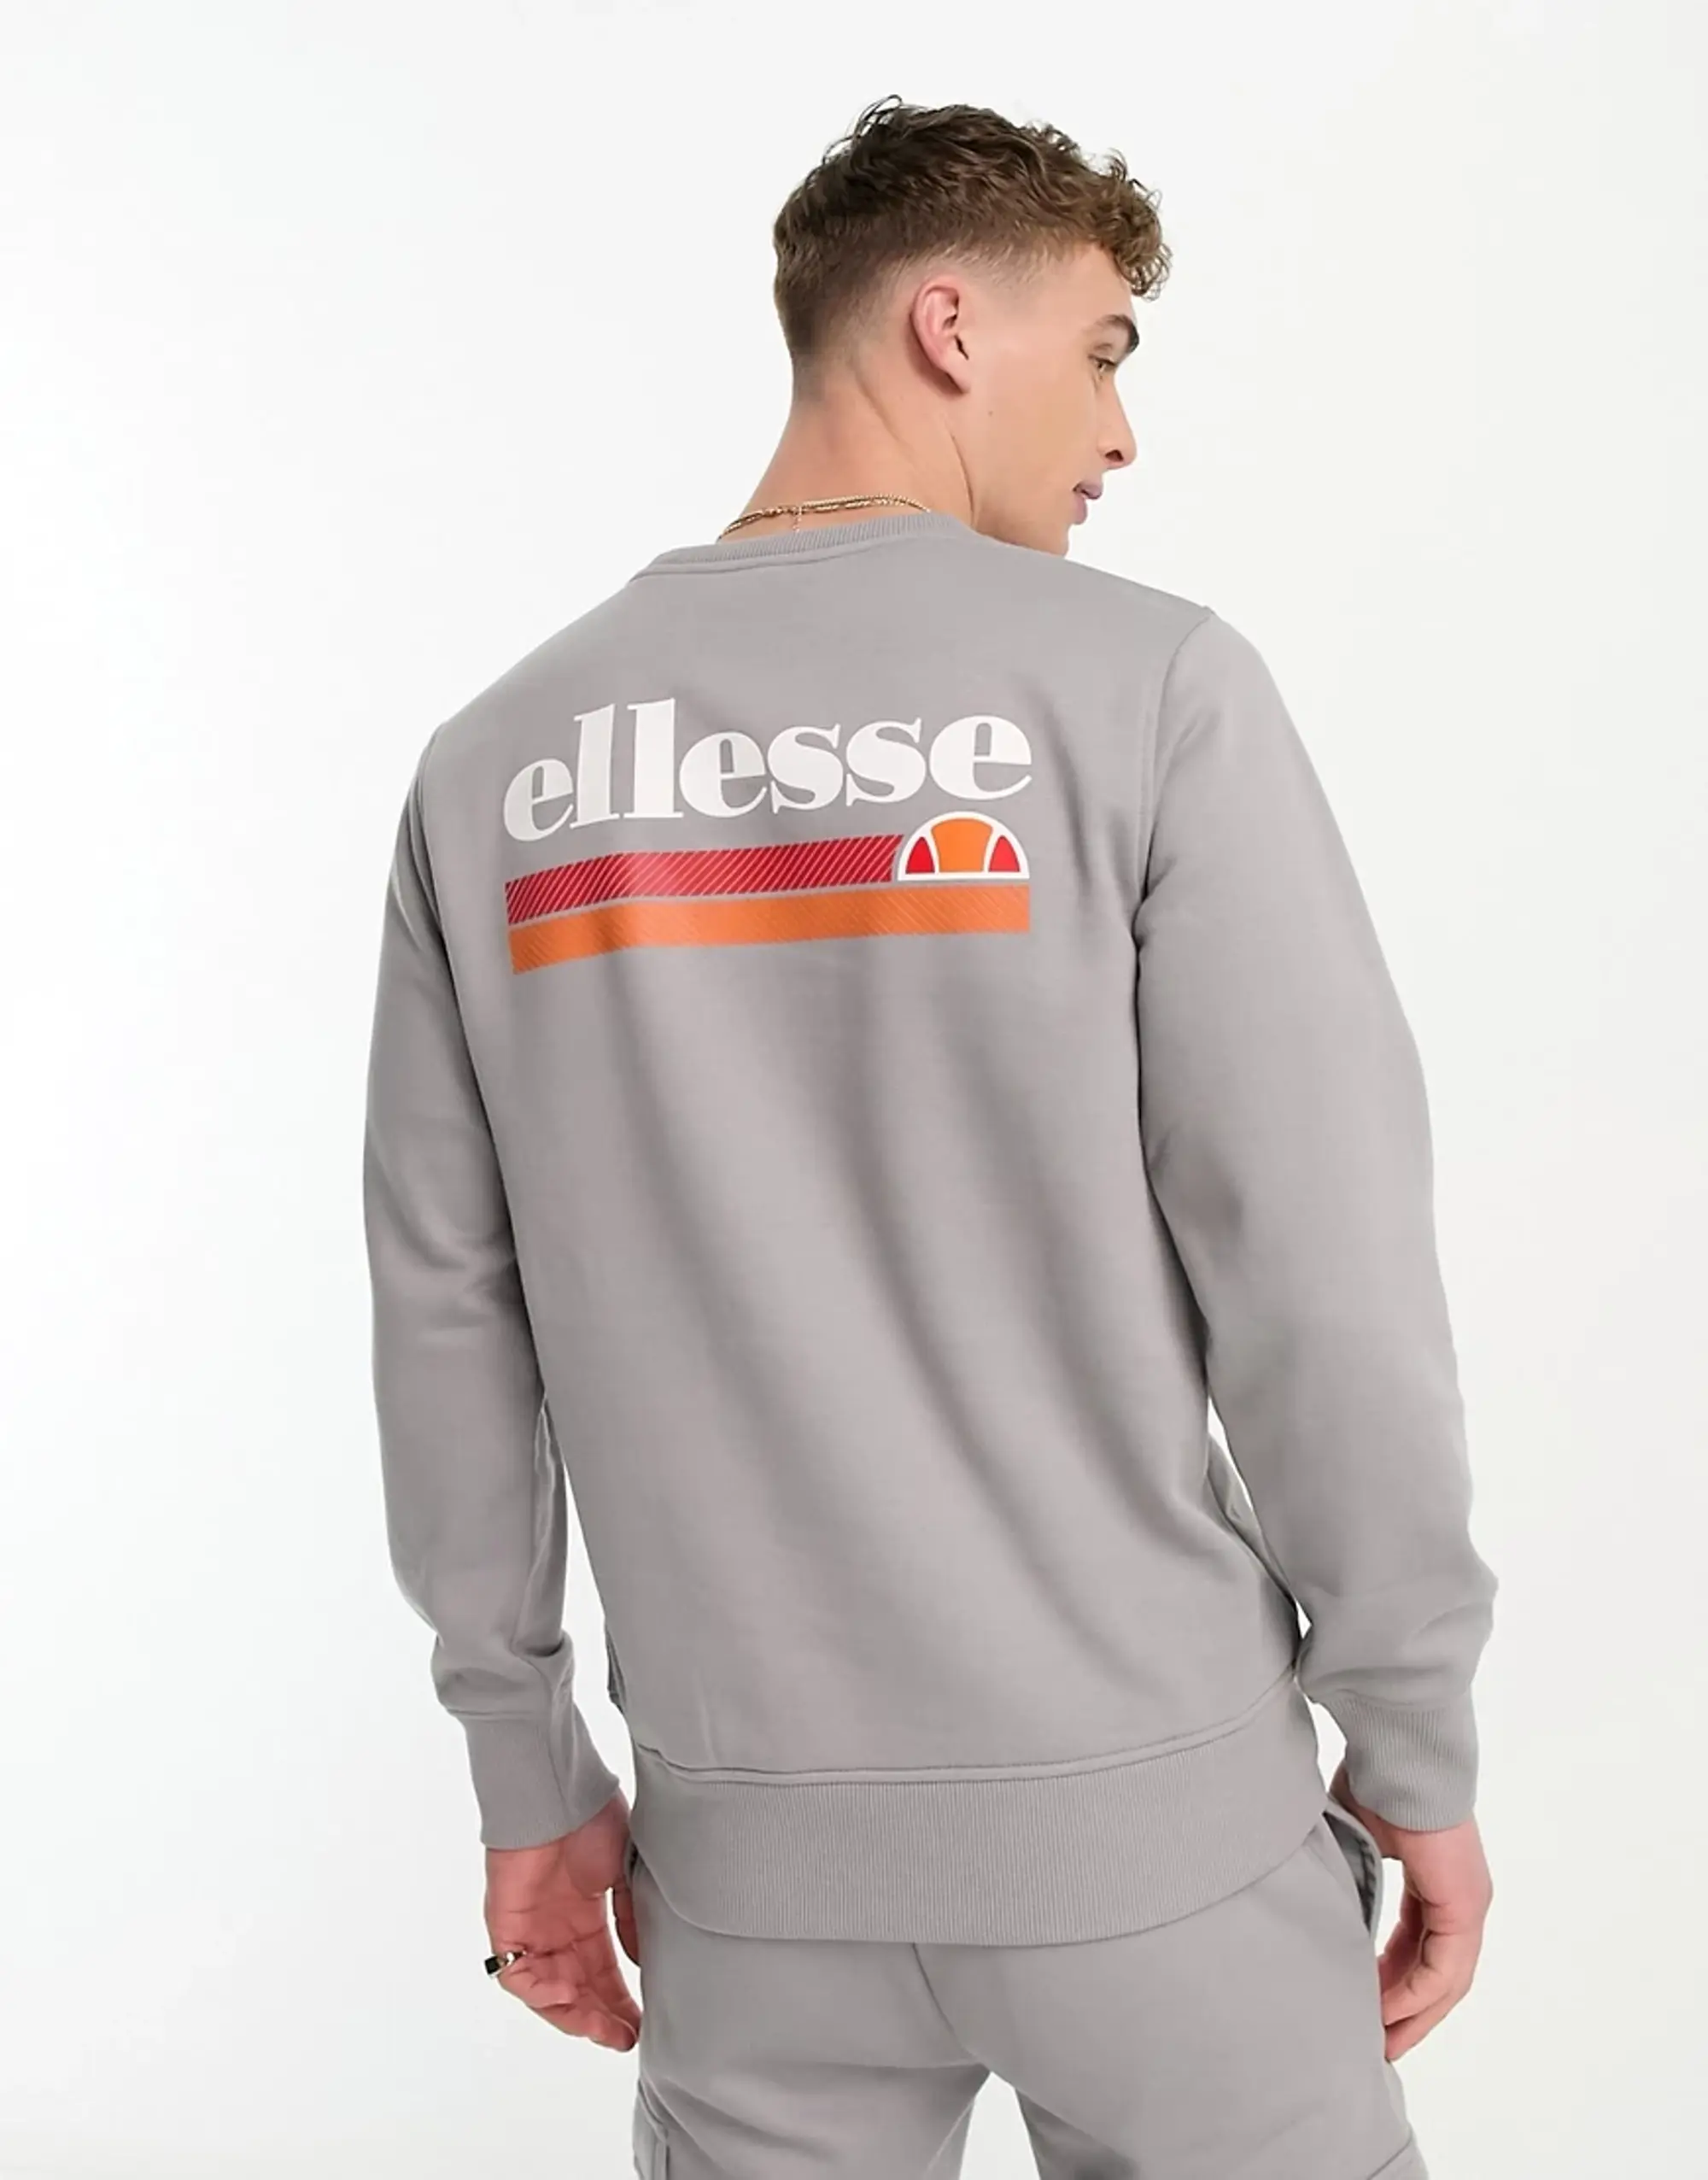 Ellesse Paliano Sweatshirt With Back Logo In Light Grey-Blue